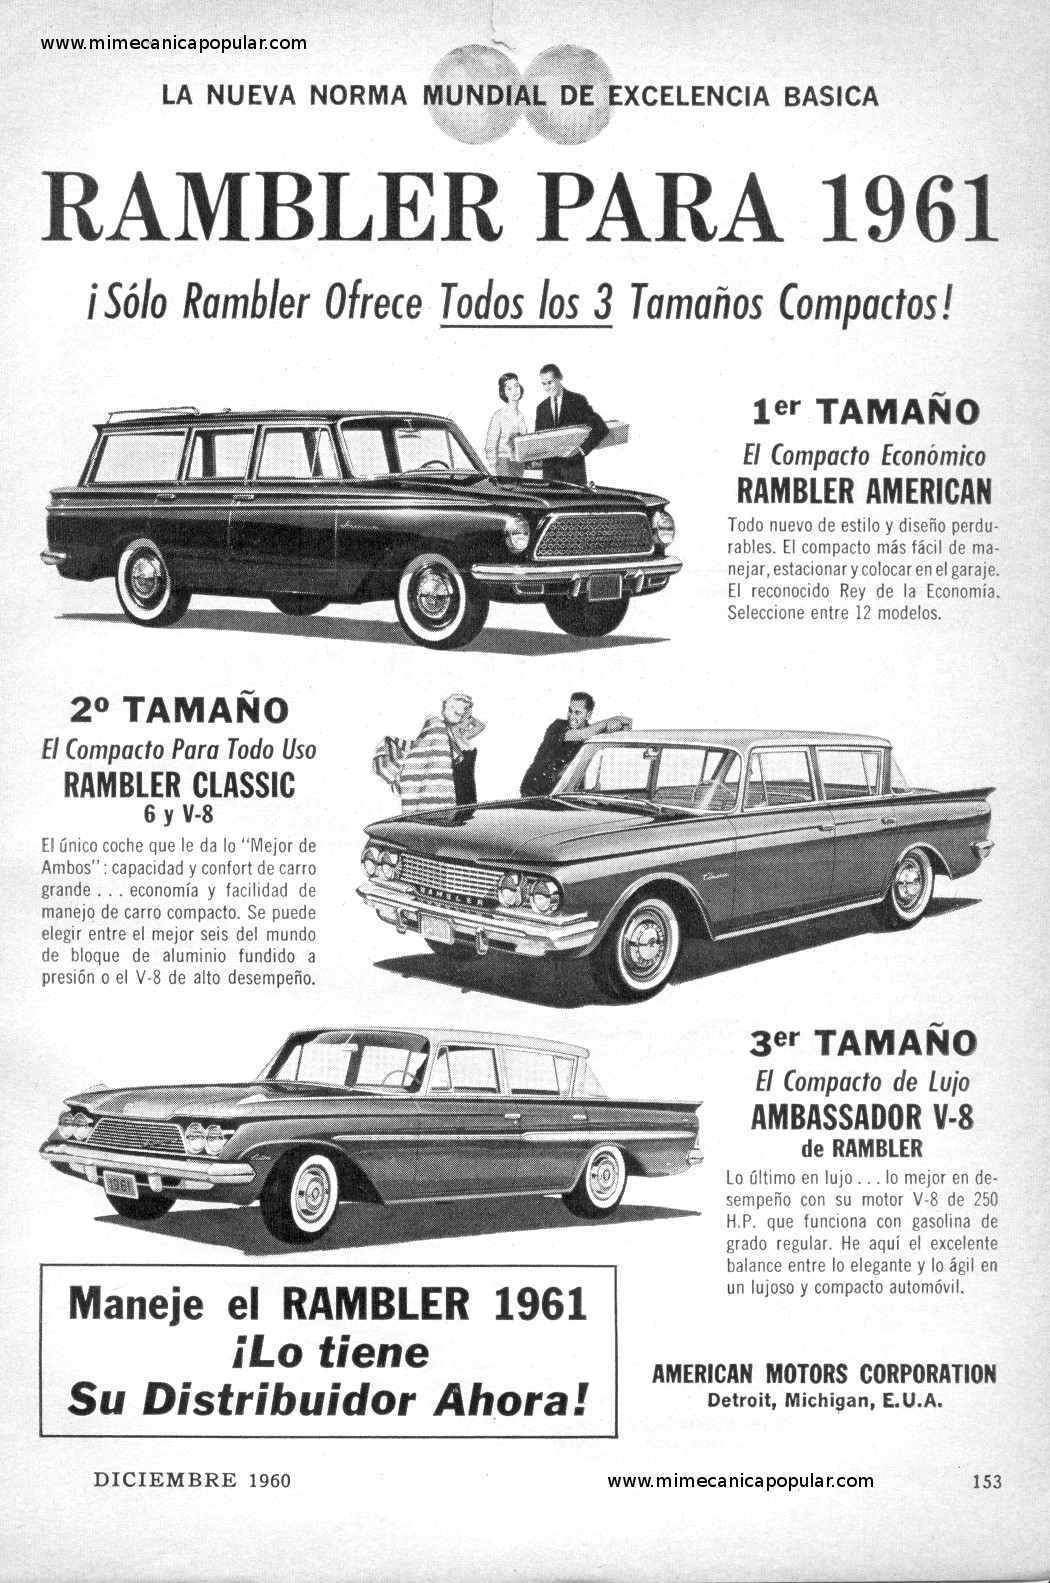 Publicidad - Rambler para 1961 - Diciembre 1960